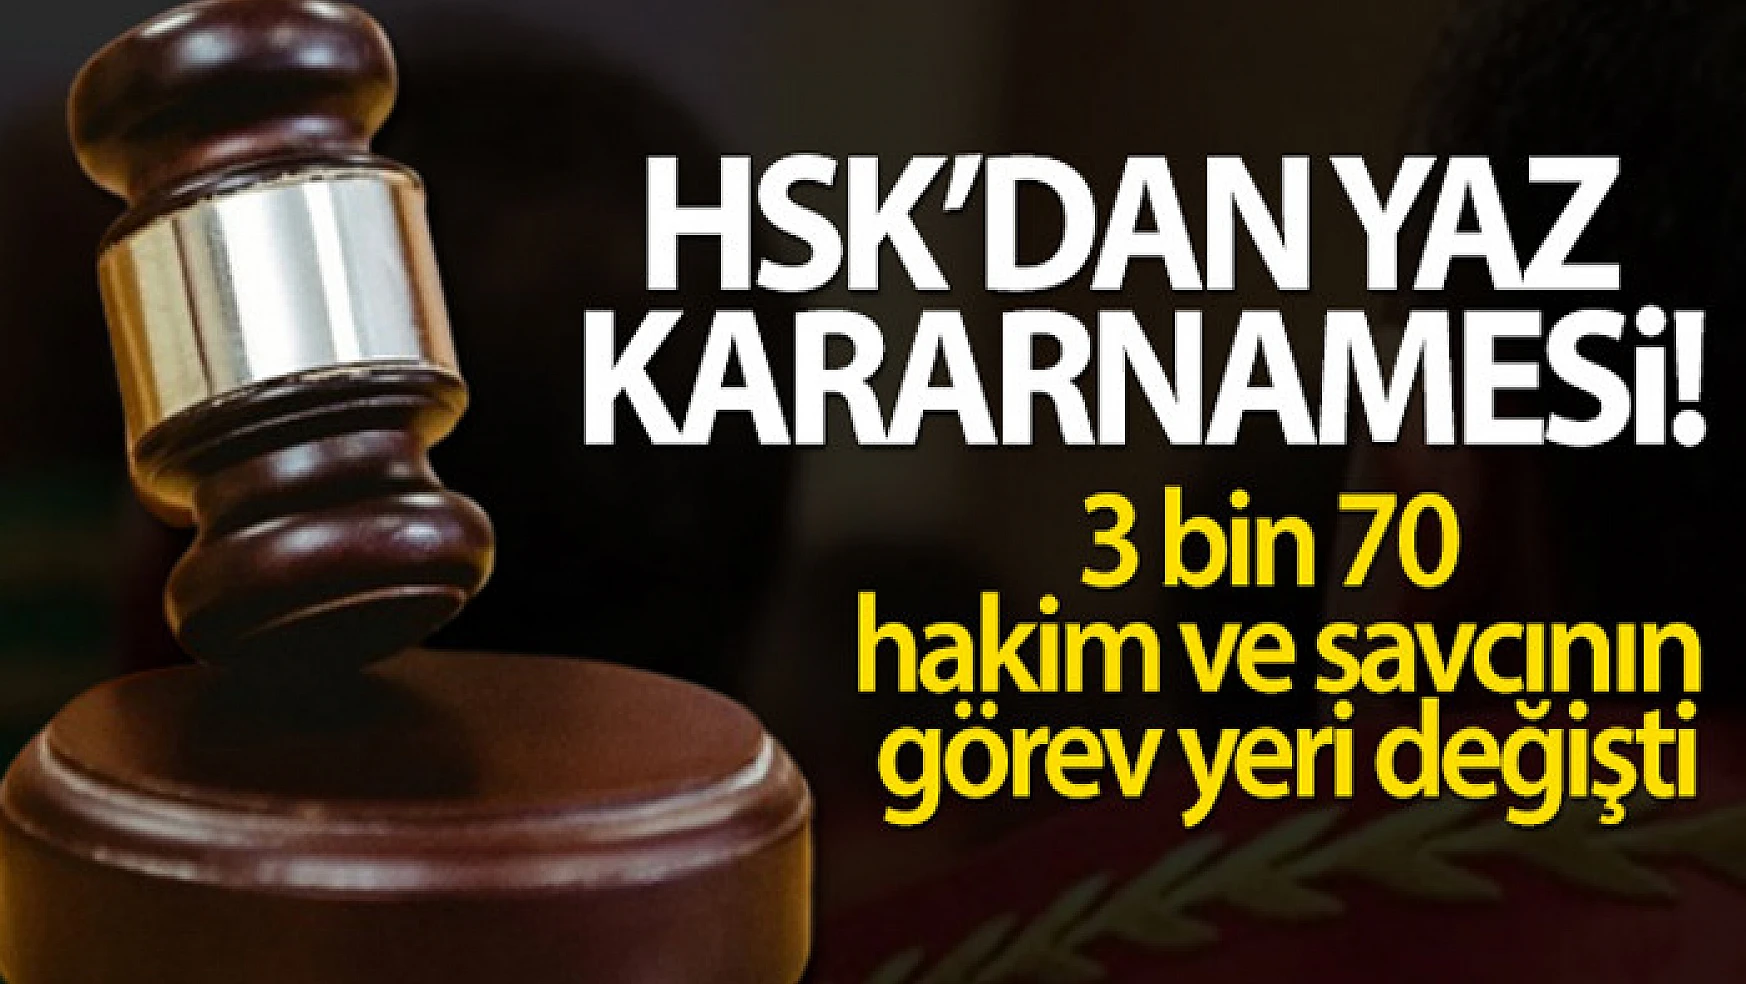 HSK'nın yaz kararnamesiyle 3 bin 70 hakim ve savcının görev yeri değişti